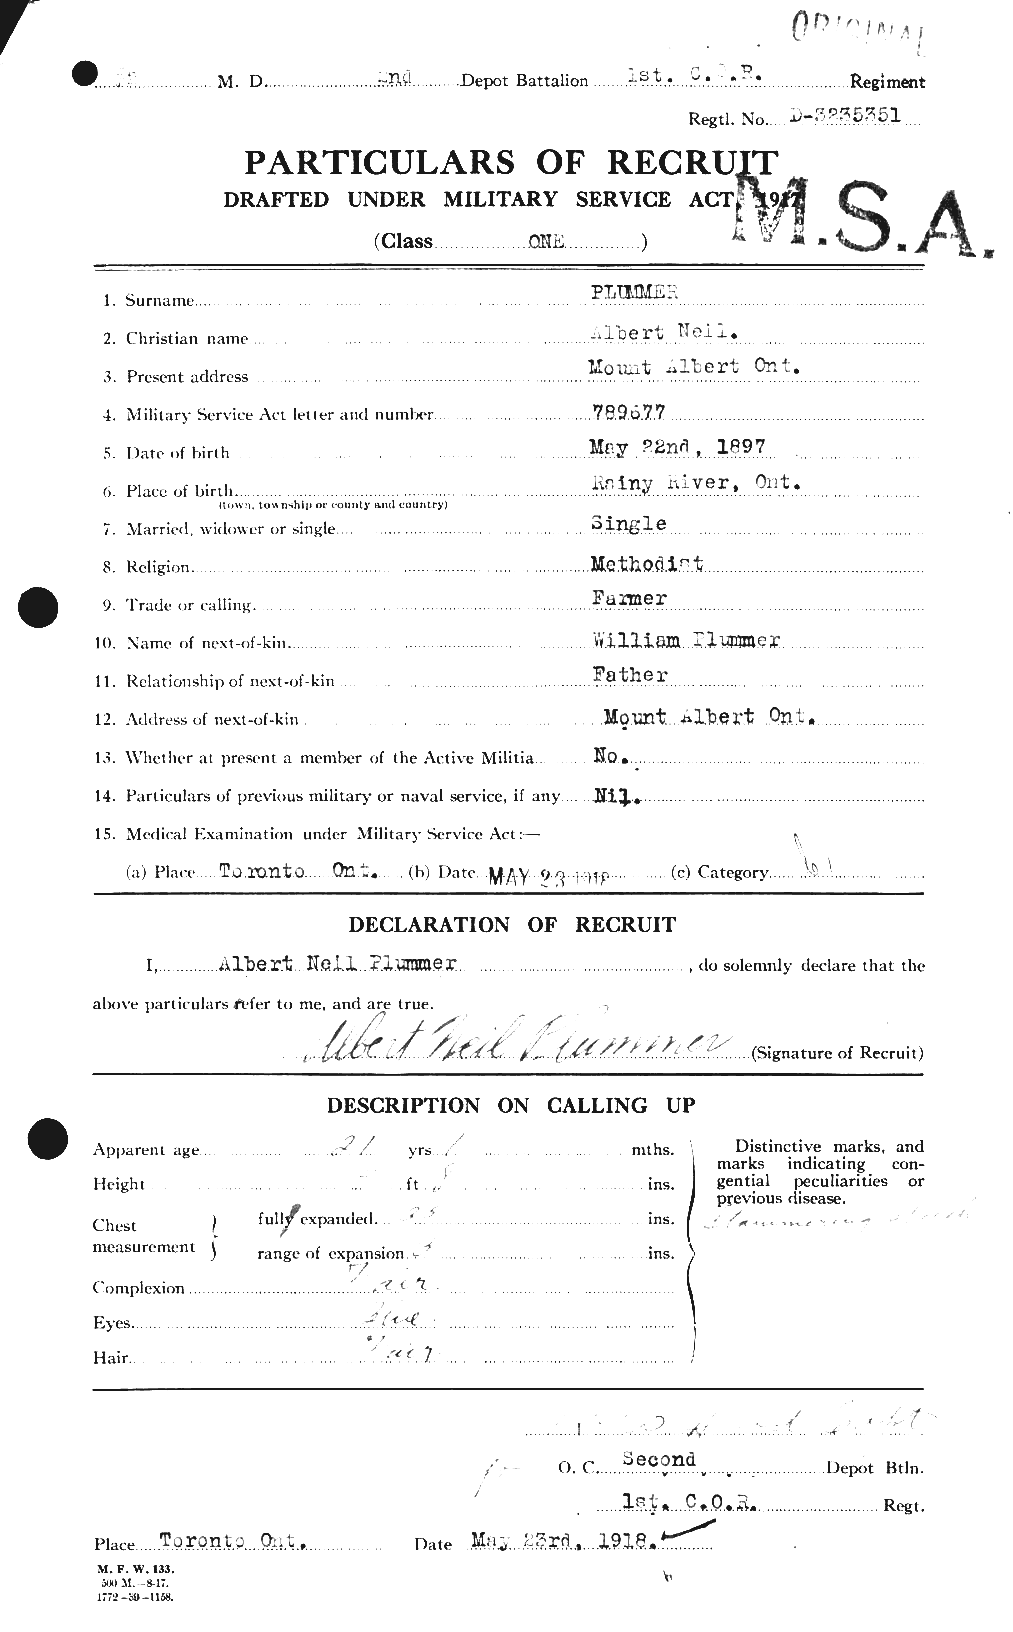 Dossiers du Personnel de la Première Guerre mondiale - CEC 581407a